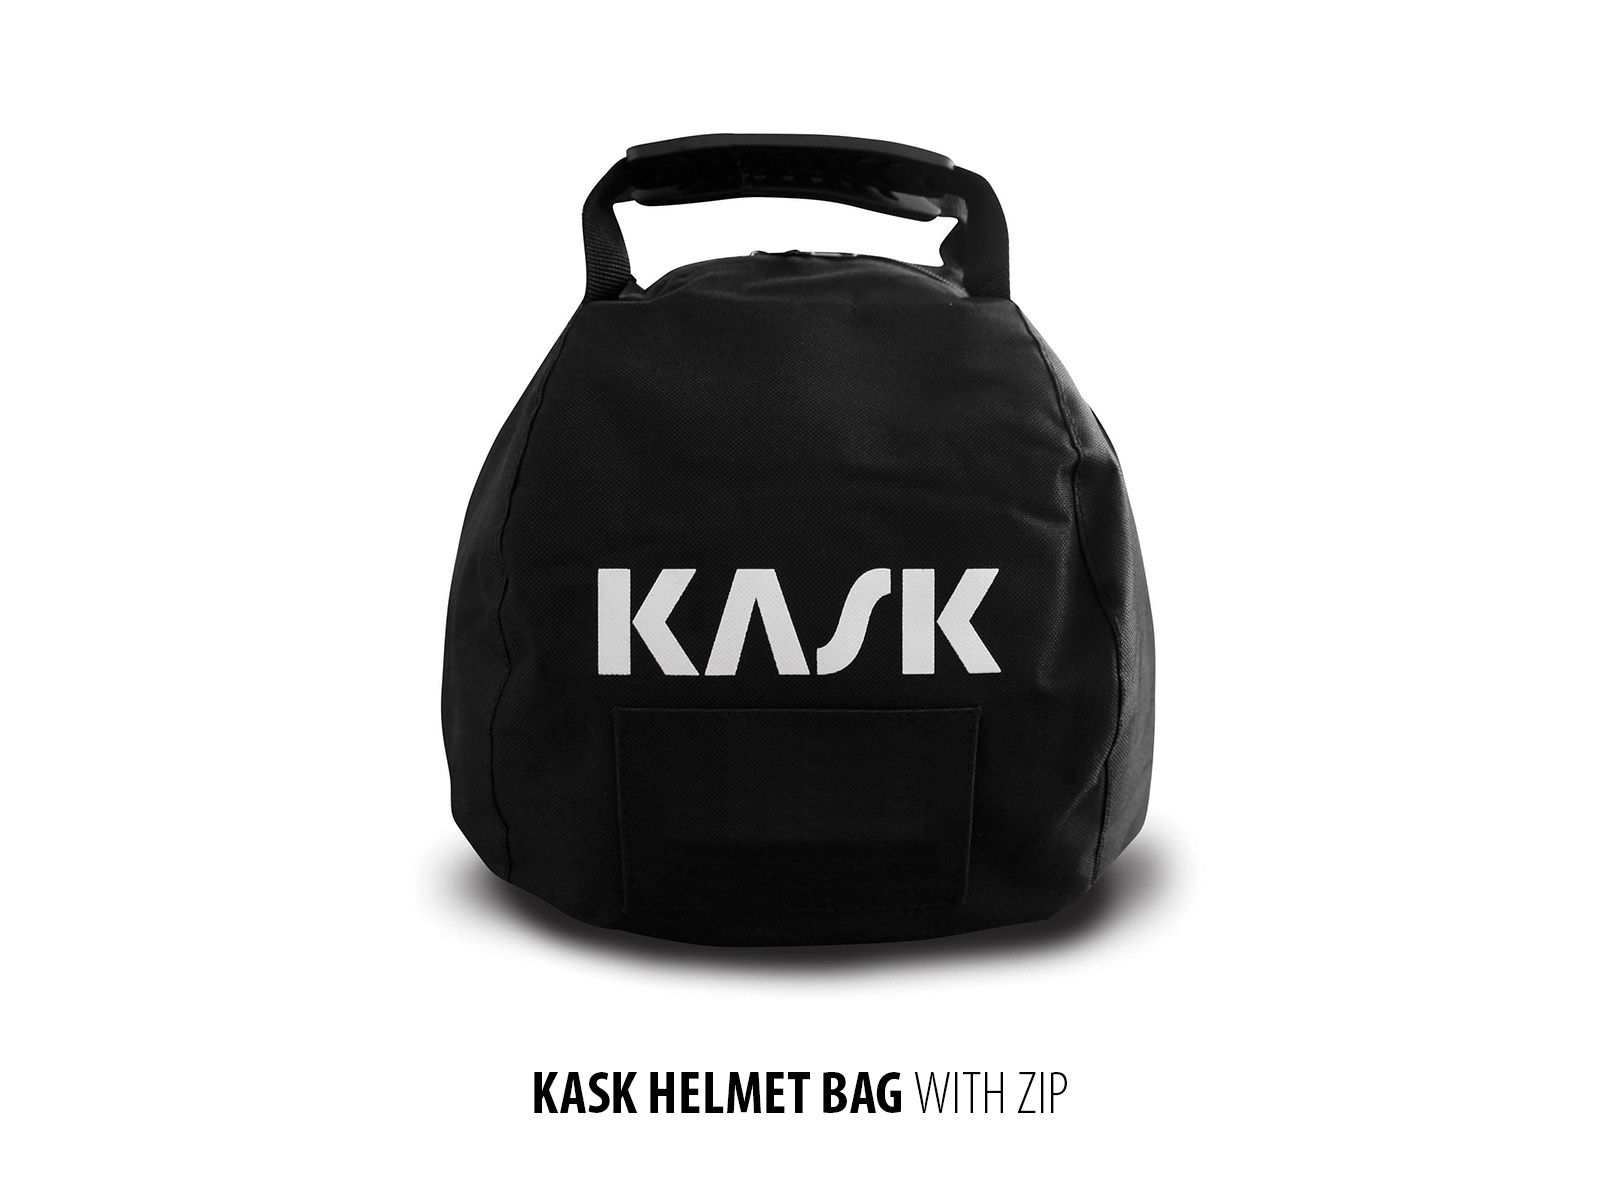 KASK-Zipped-Helmet-Bag.jpg